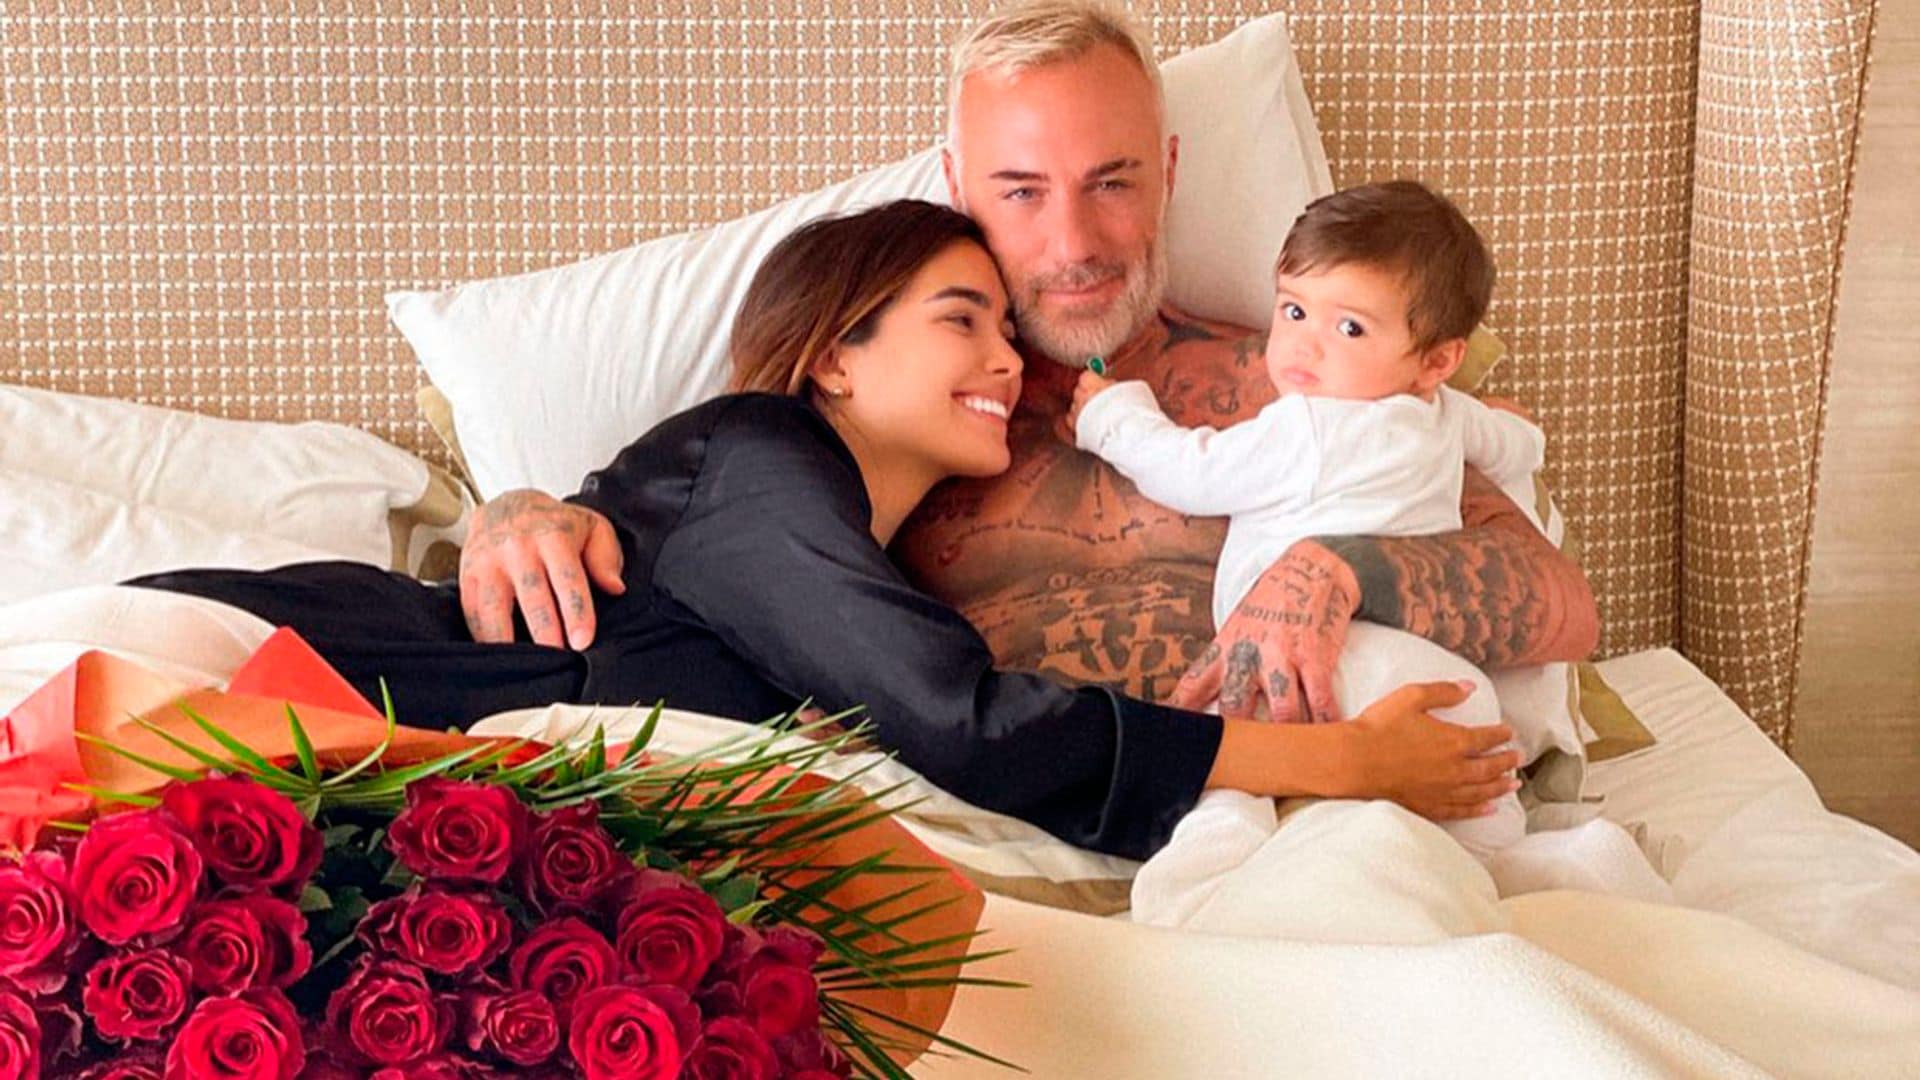 El espectacular recibimiento a Gianluca Vacchi y su familia en su mansión de Bolonia tras varios meses en Miami